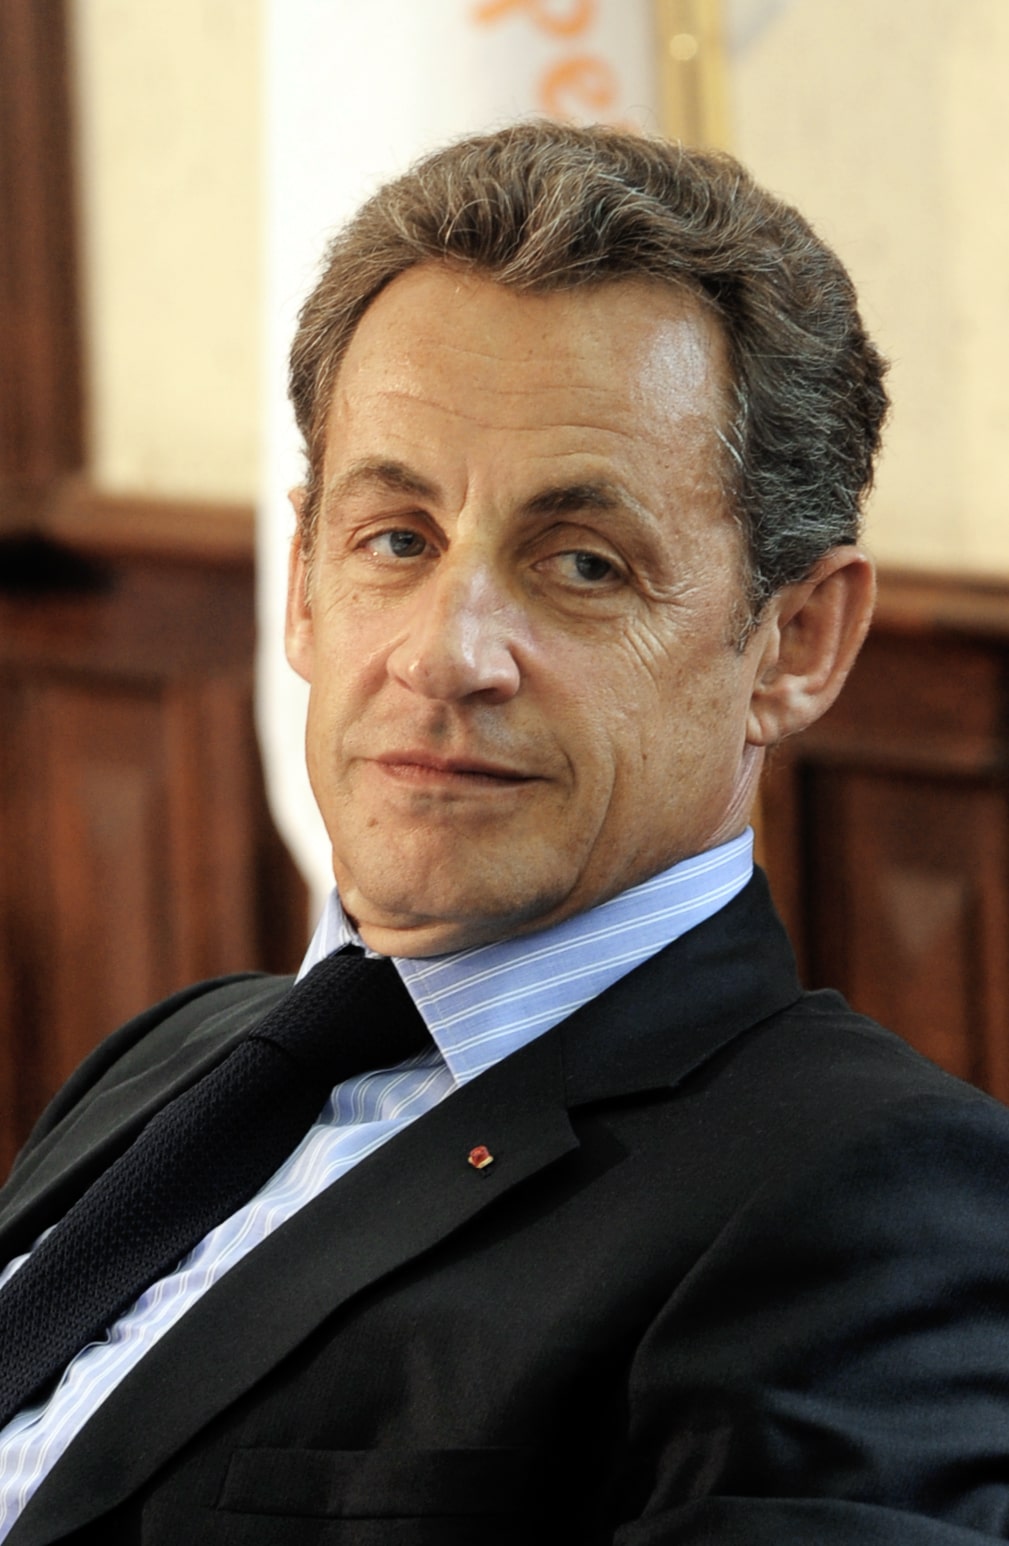 Ex French President Nicolas Sarkozy faces prison term